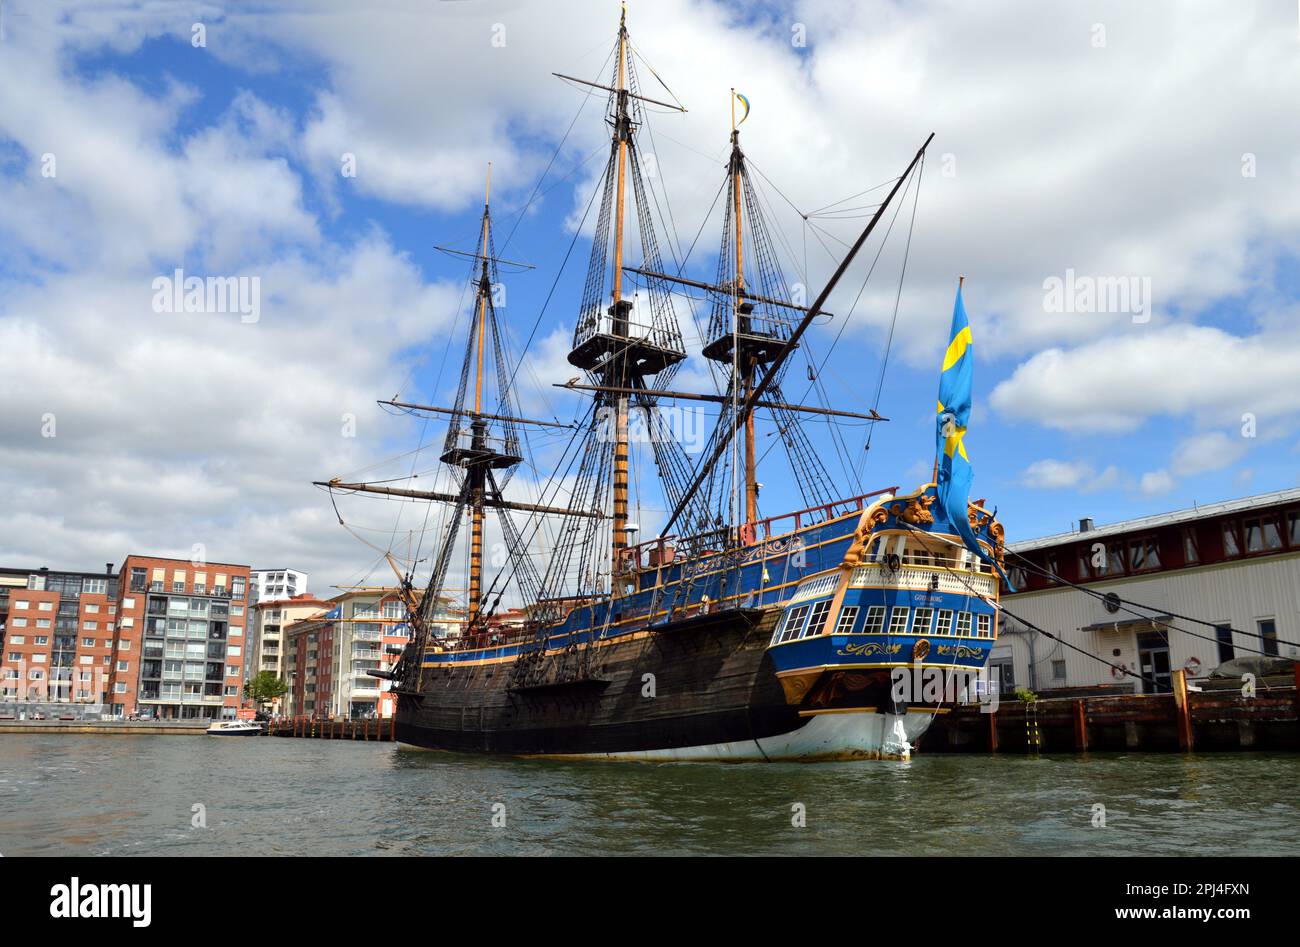 Schweden, Göteborg: Das ostindianische Segelschiff "Göteburg", eine Nachbildung des Schiffes, das 1745 vor der Küste von Göteborg sank. Es dauert zehn Jahre, bis er wieder da ist Stockfoto